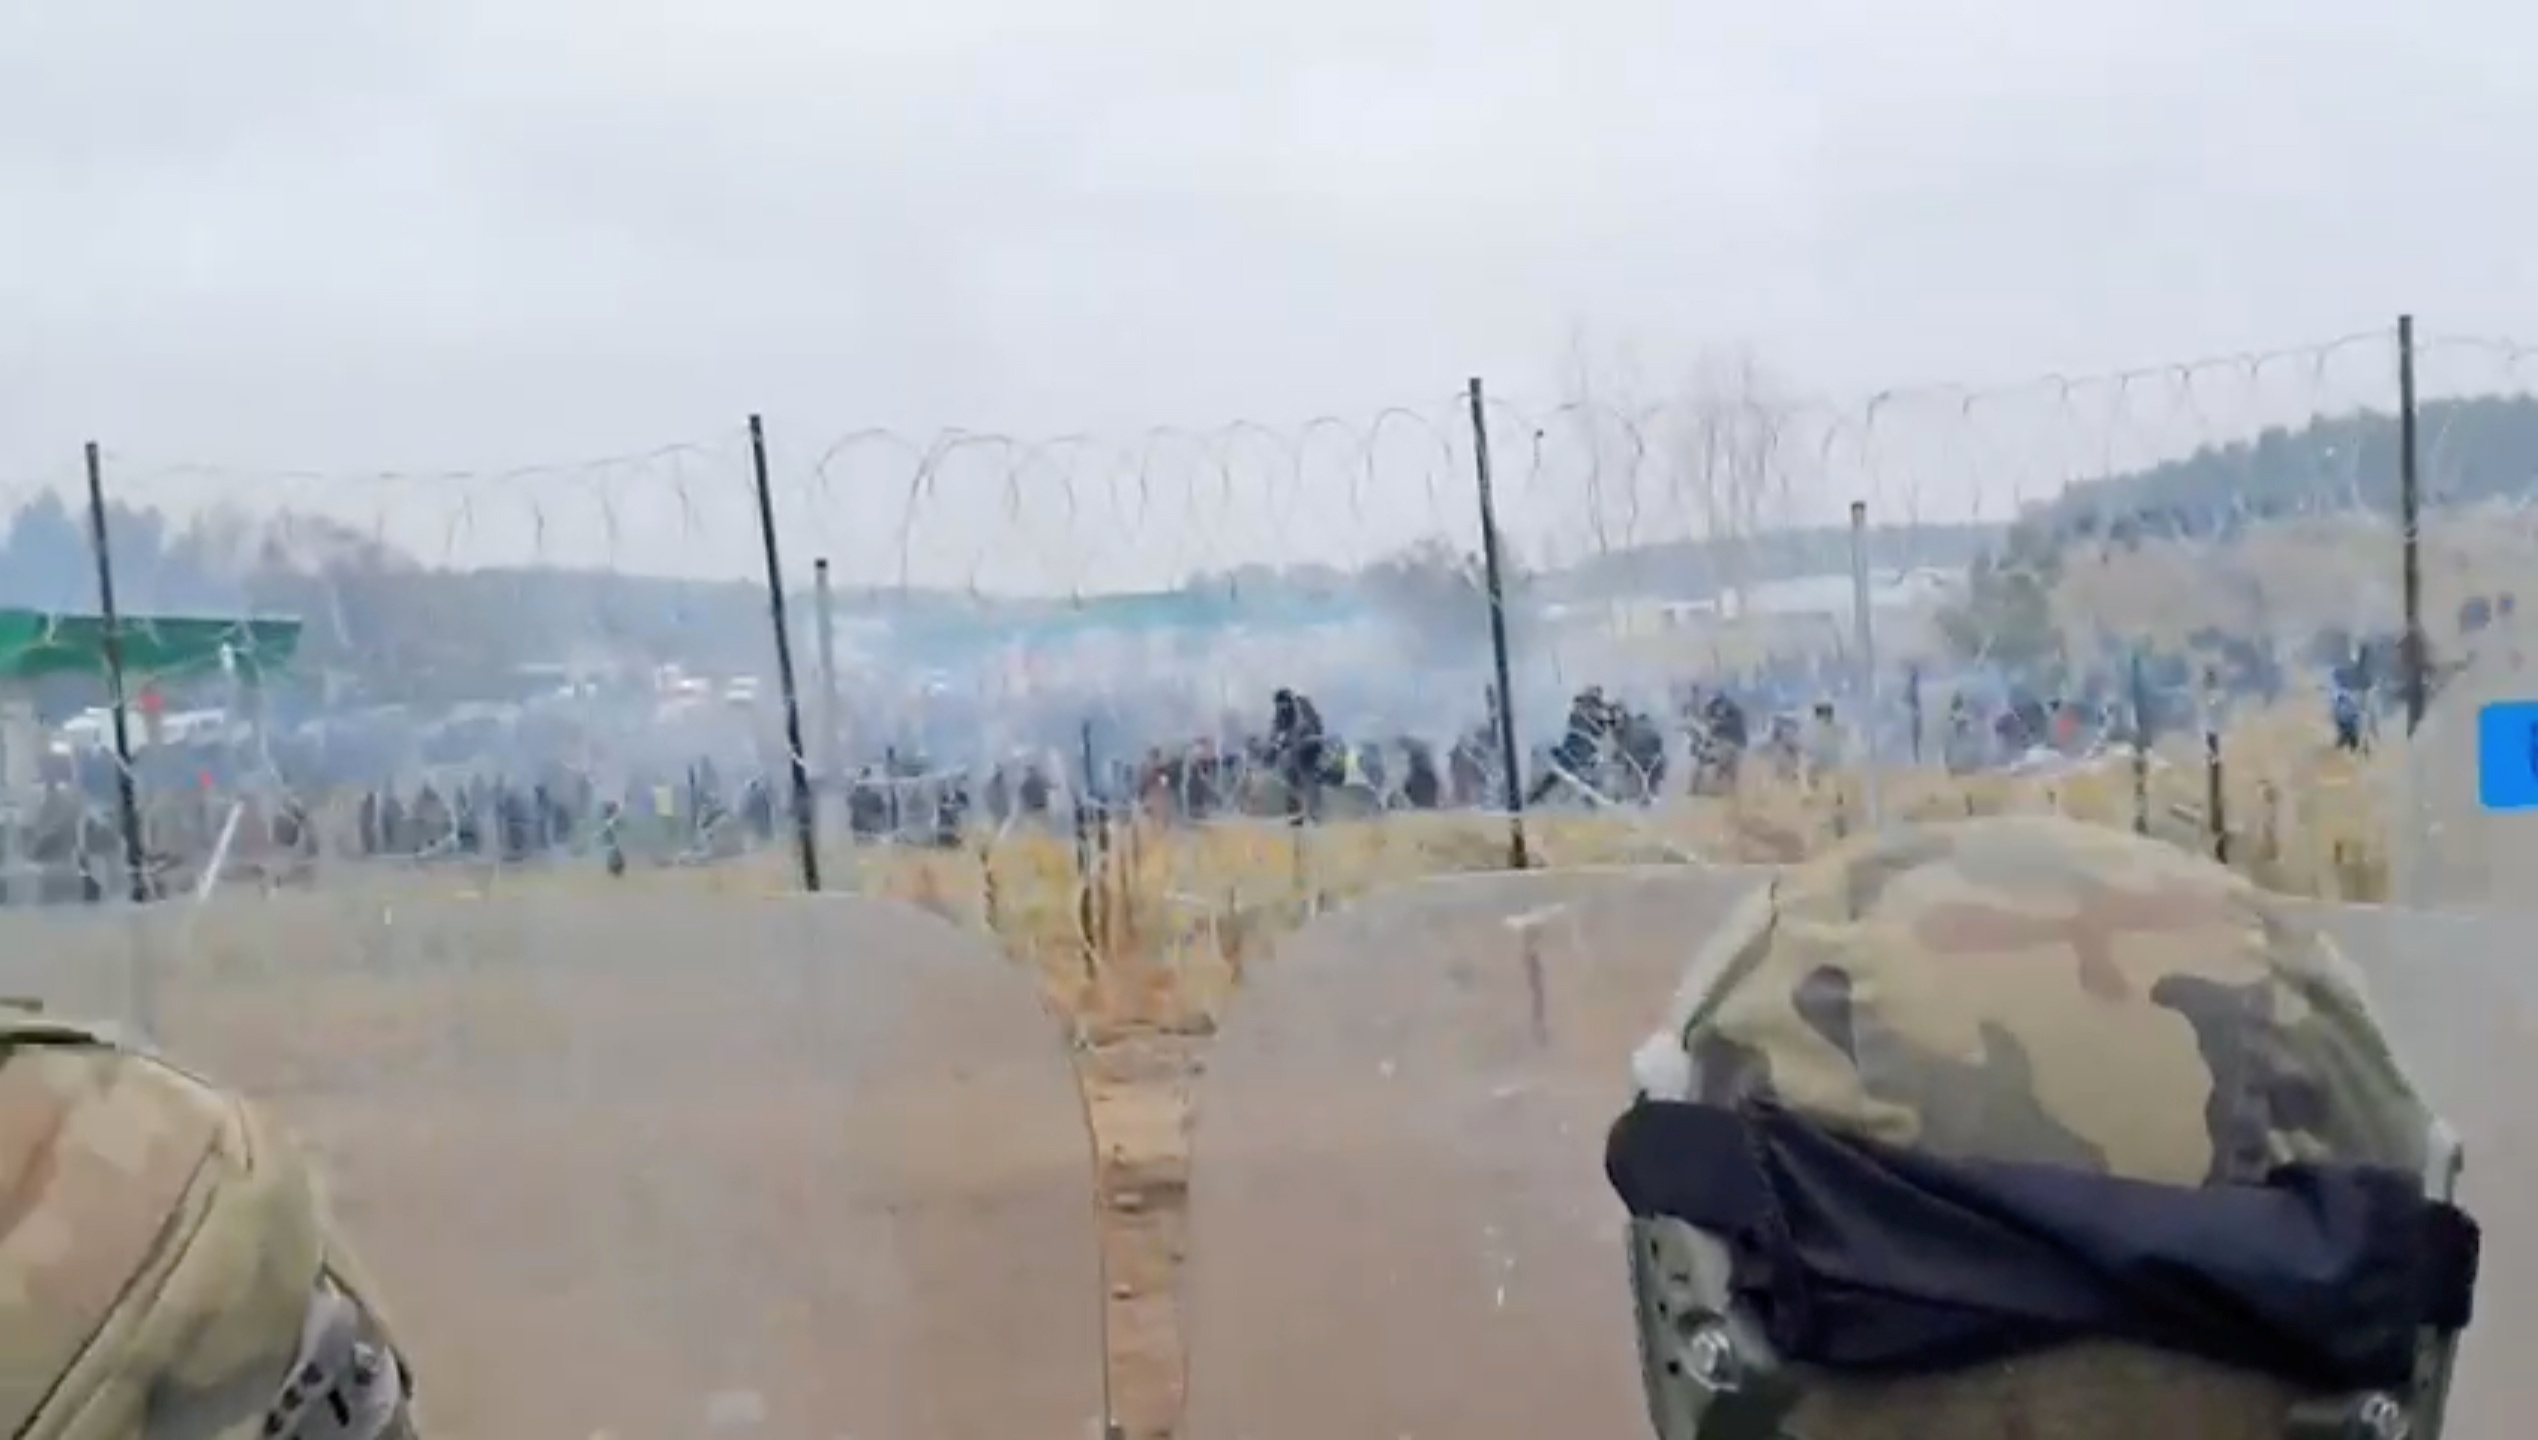 Unha imaxe fixa, tomada dun vídeo divulgado polo Ministerio de Defensa polaco, mostra aos militares polacos facendo garda diante dun valado, mentres os migrantes intentan cruzar a fronteira bielorrusa-polaca no posto de control de Kuznica - Bruzgi, Polonia, o 16 de novembro de 2021. LUN/Folleto vía REUTERS